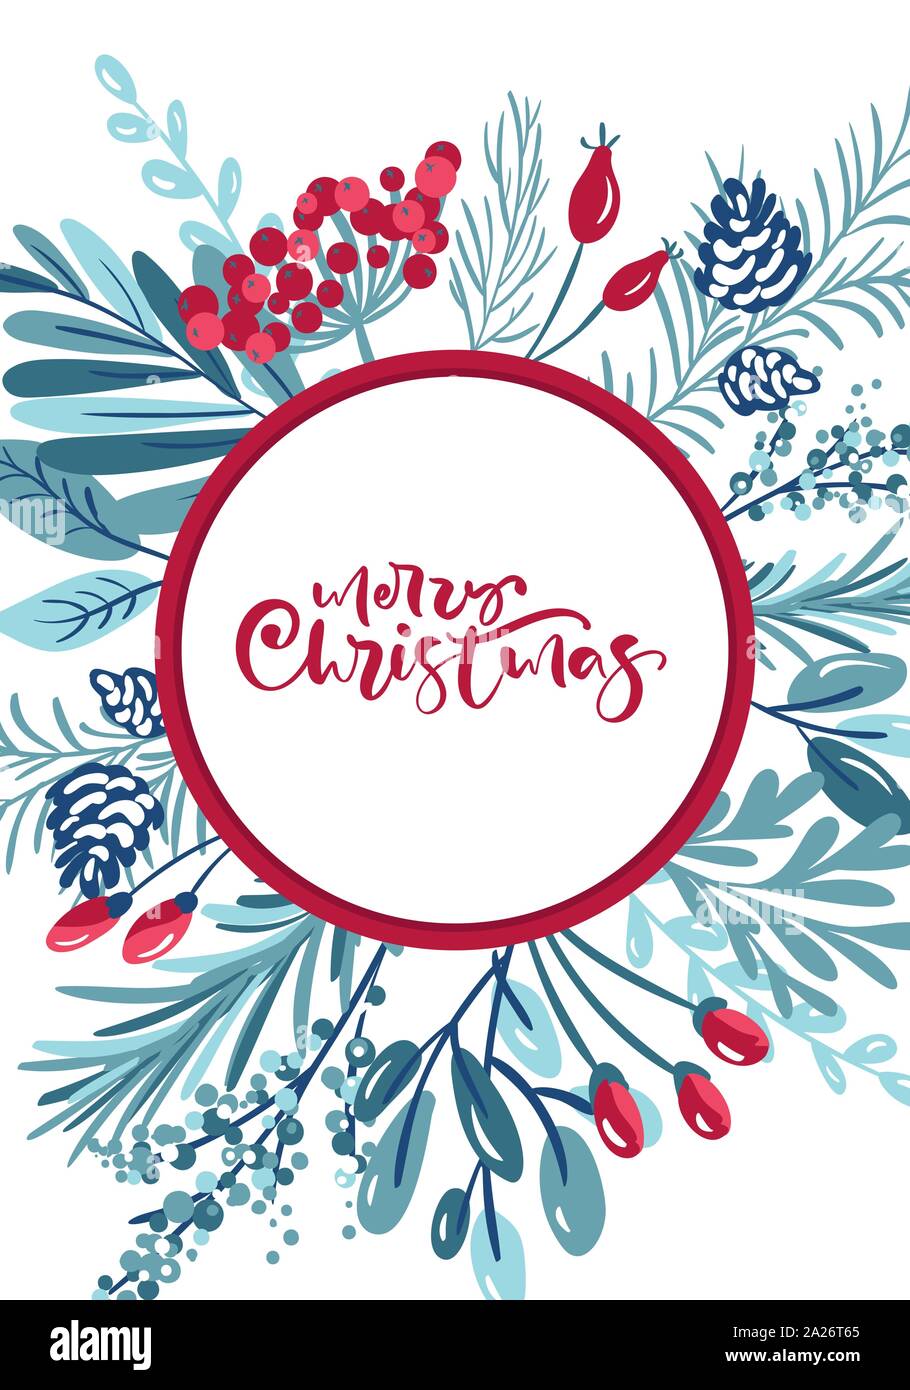 Frohe Weihnachten kalligrafische Schriftzüge Hand geschriebenen Text. Grußkarte Design mit Blumen und Beeren xmas-Elemente. Moderne Winter Postkarte Stock Vektor